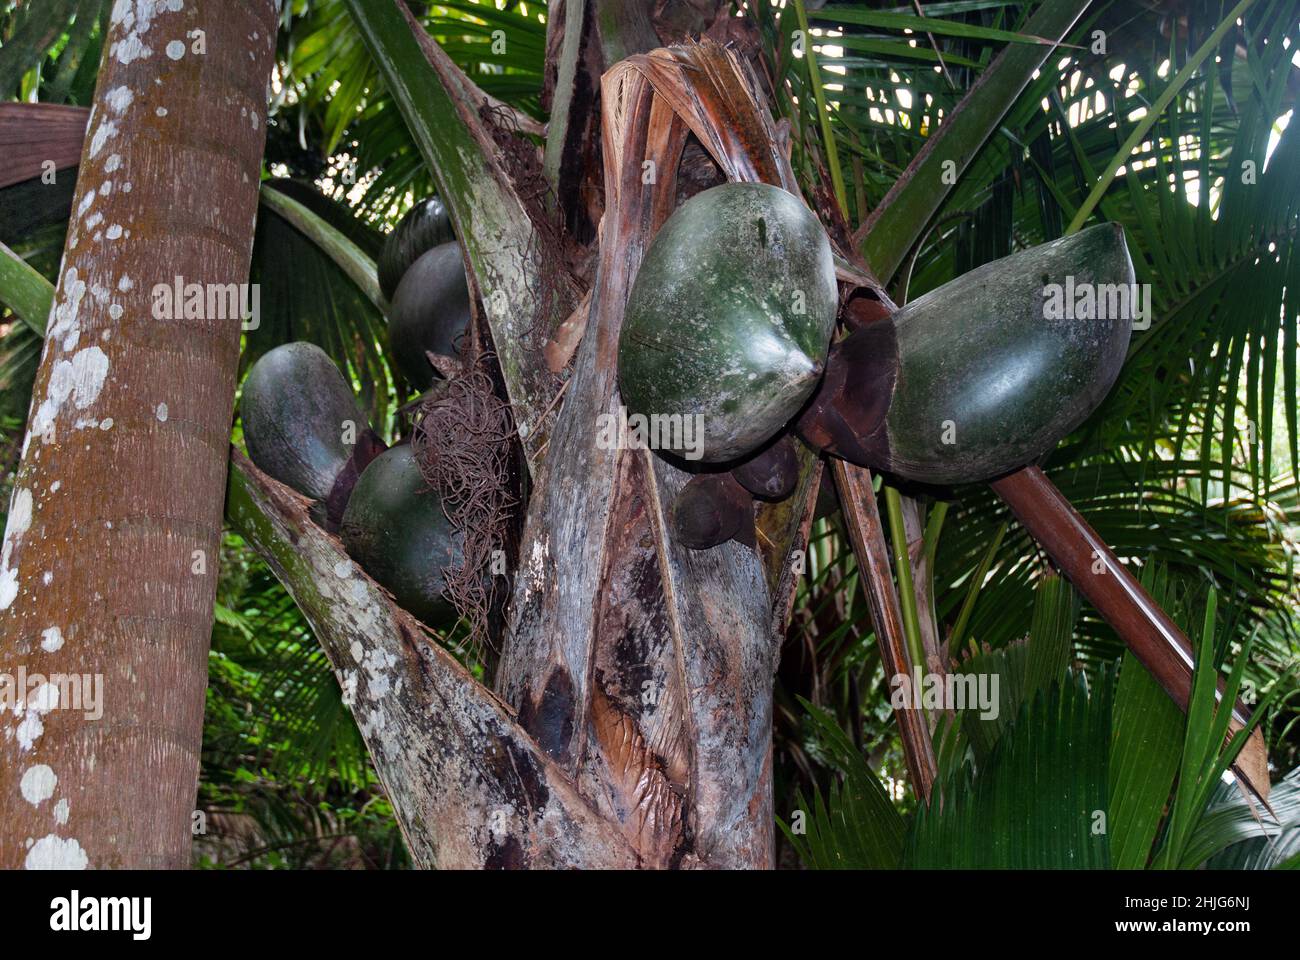 Lodoicea maldivica (Coco de mer) ist eine Palmenart, die auf den Inseln Praslin und Curieuse auf den Seychellen endemisch ist. Es kommt im Regenwald vor. Stockfoto